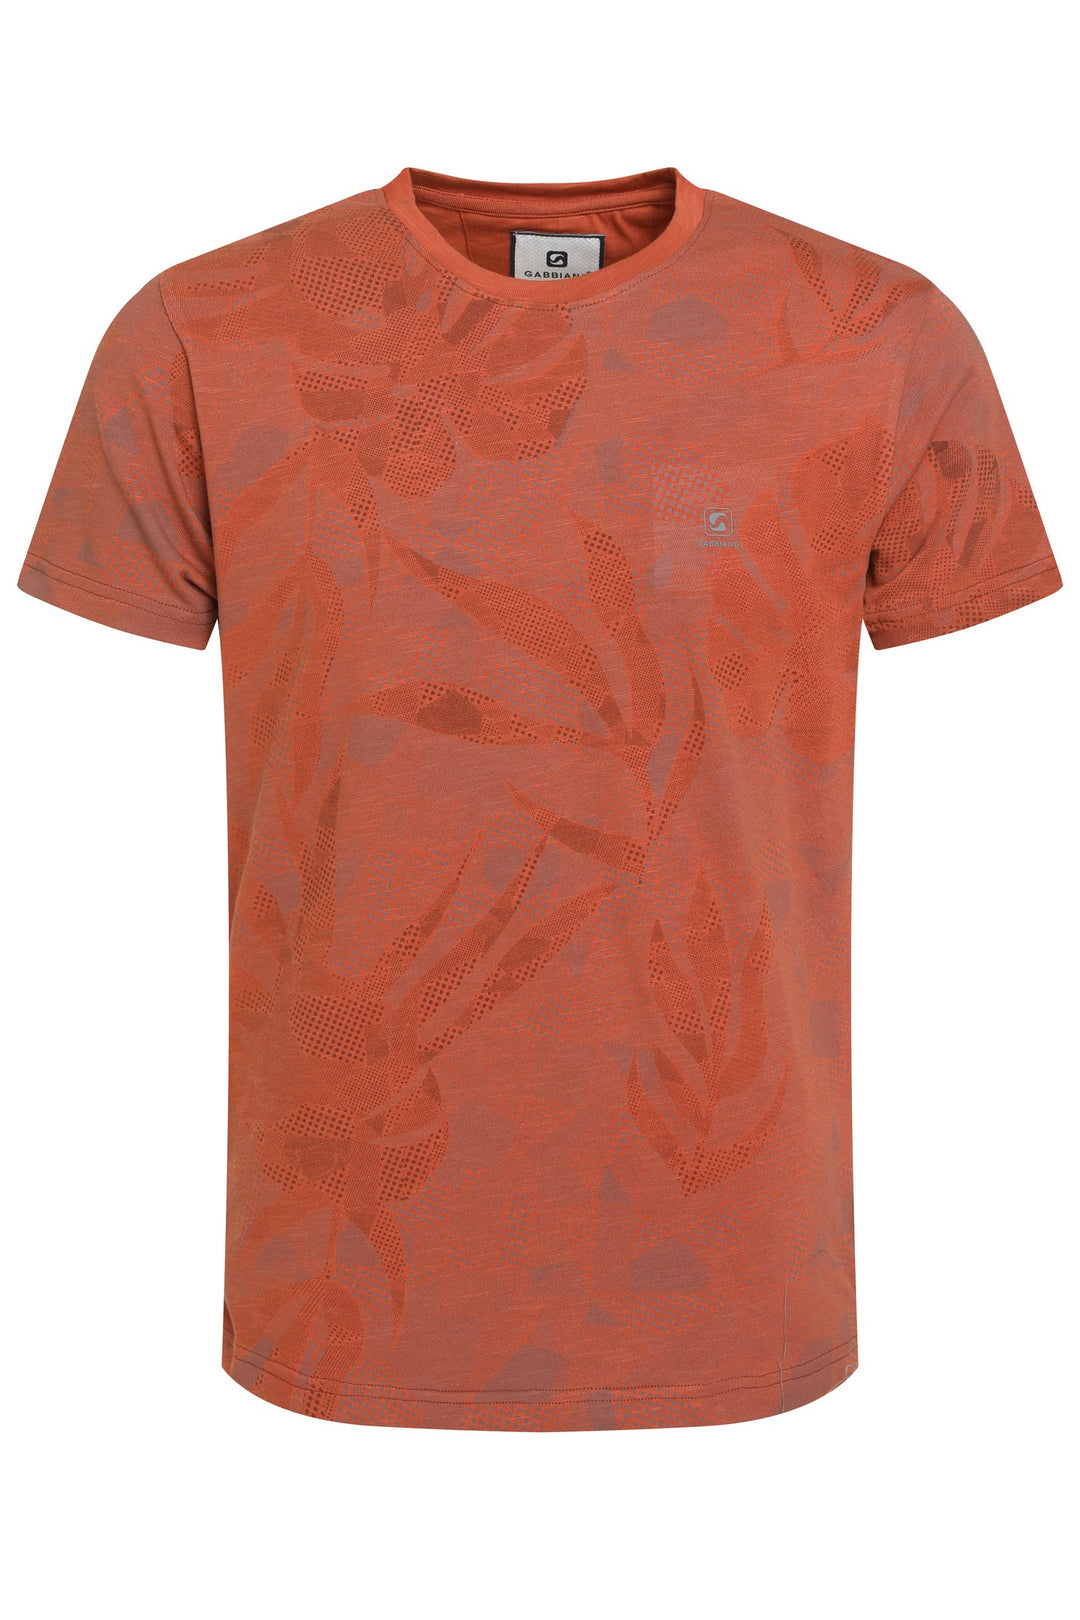 Gabbiano - Heren Shirt - 153530 - 425 Terra